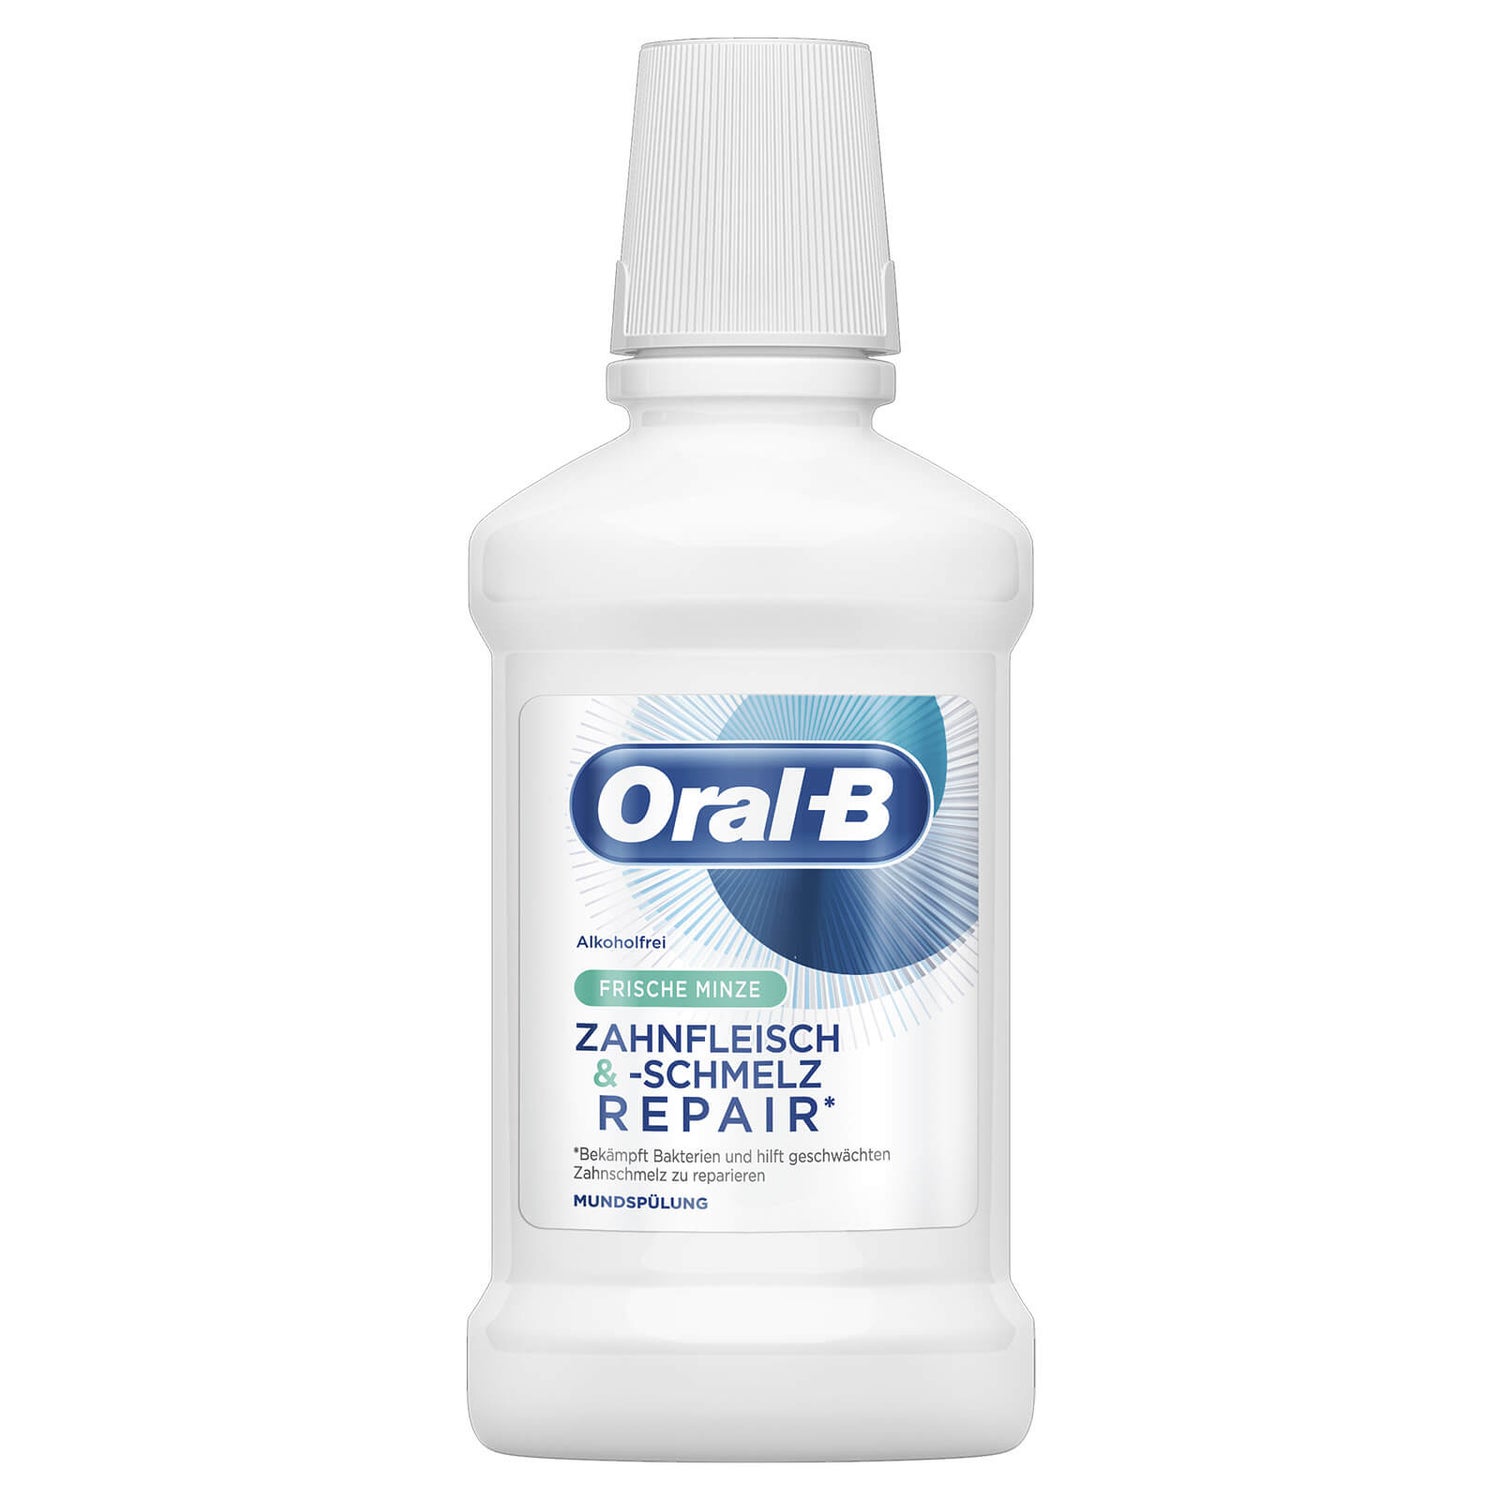 Oral-B Zahnfleisch & -schmelz Repair Mundspülung 250 ml